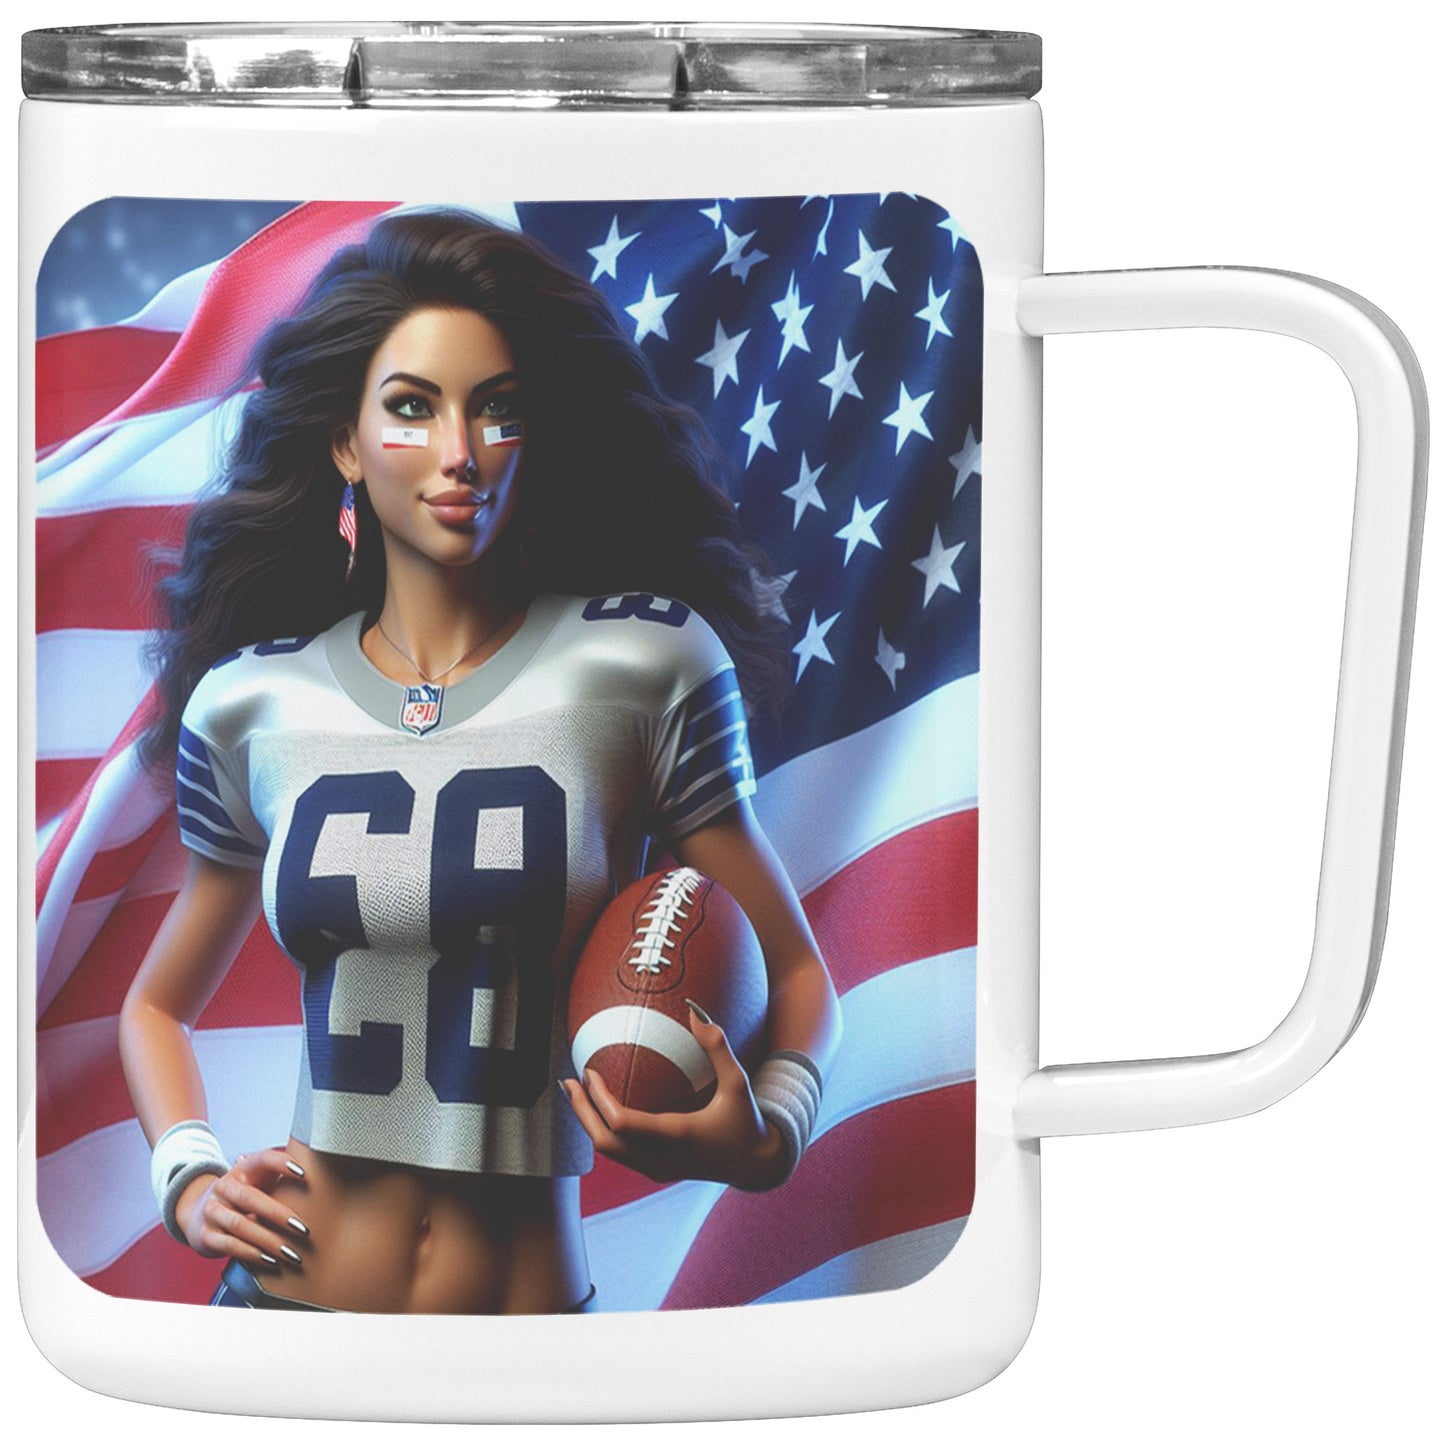 Woman Football Player - Insulated Coffee Mug #21